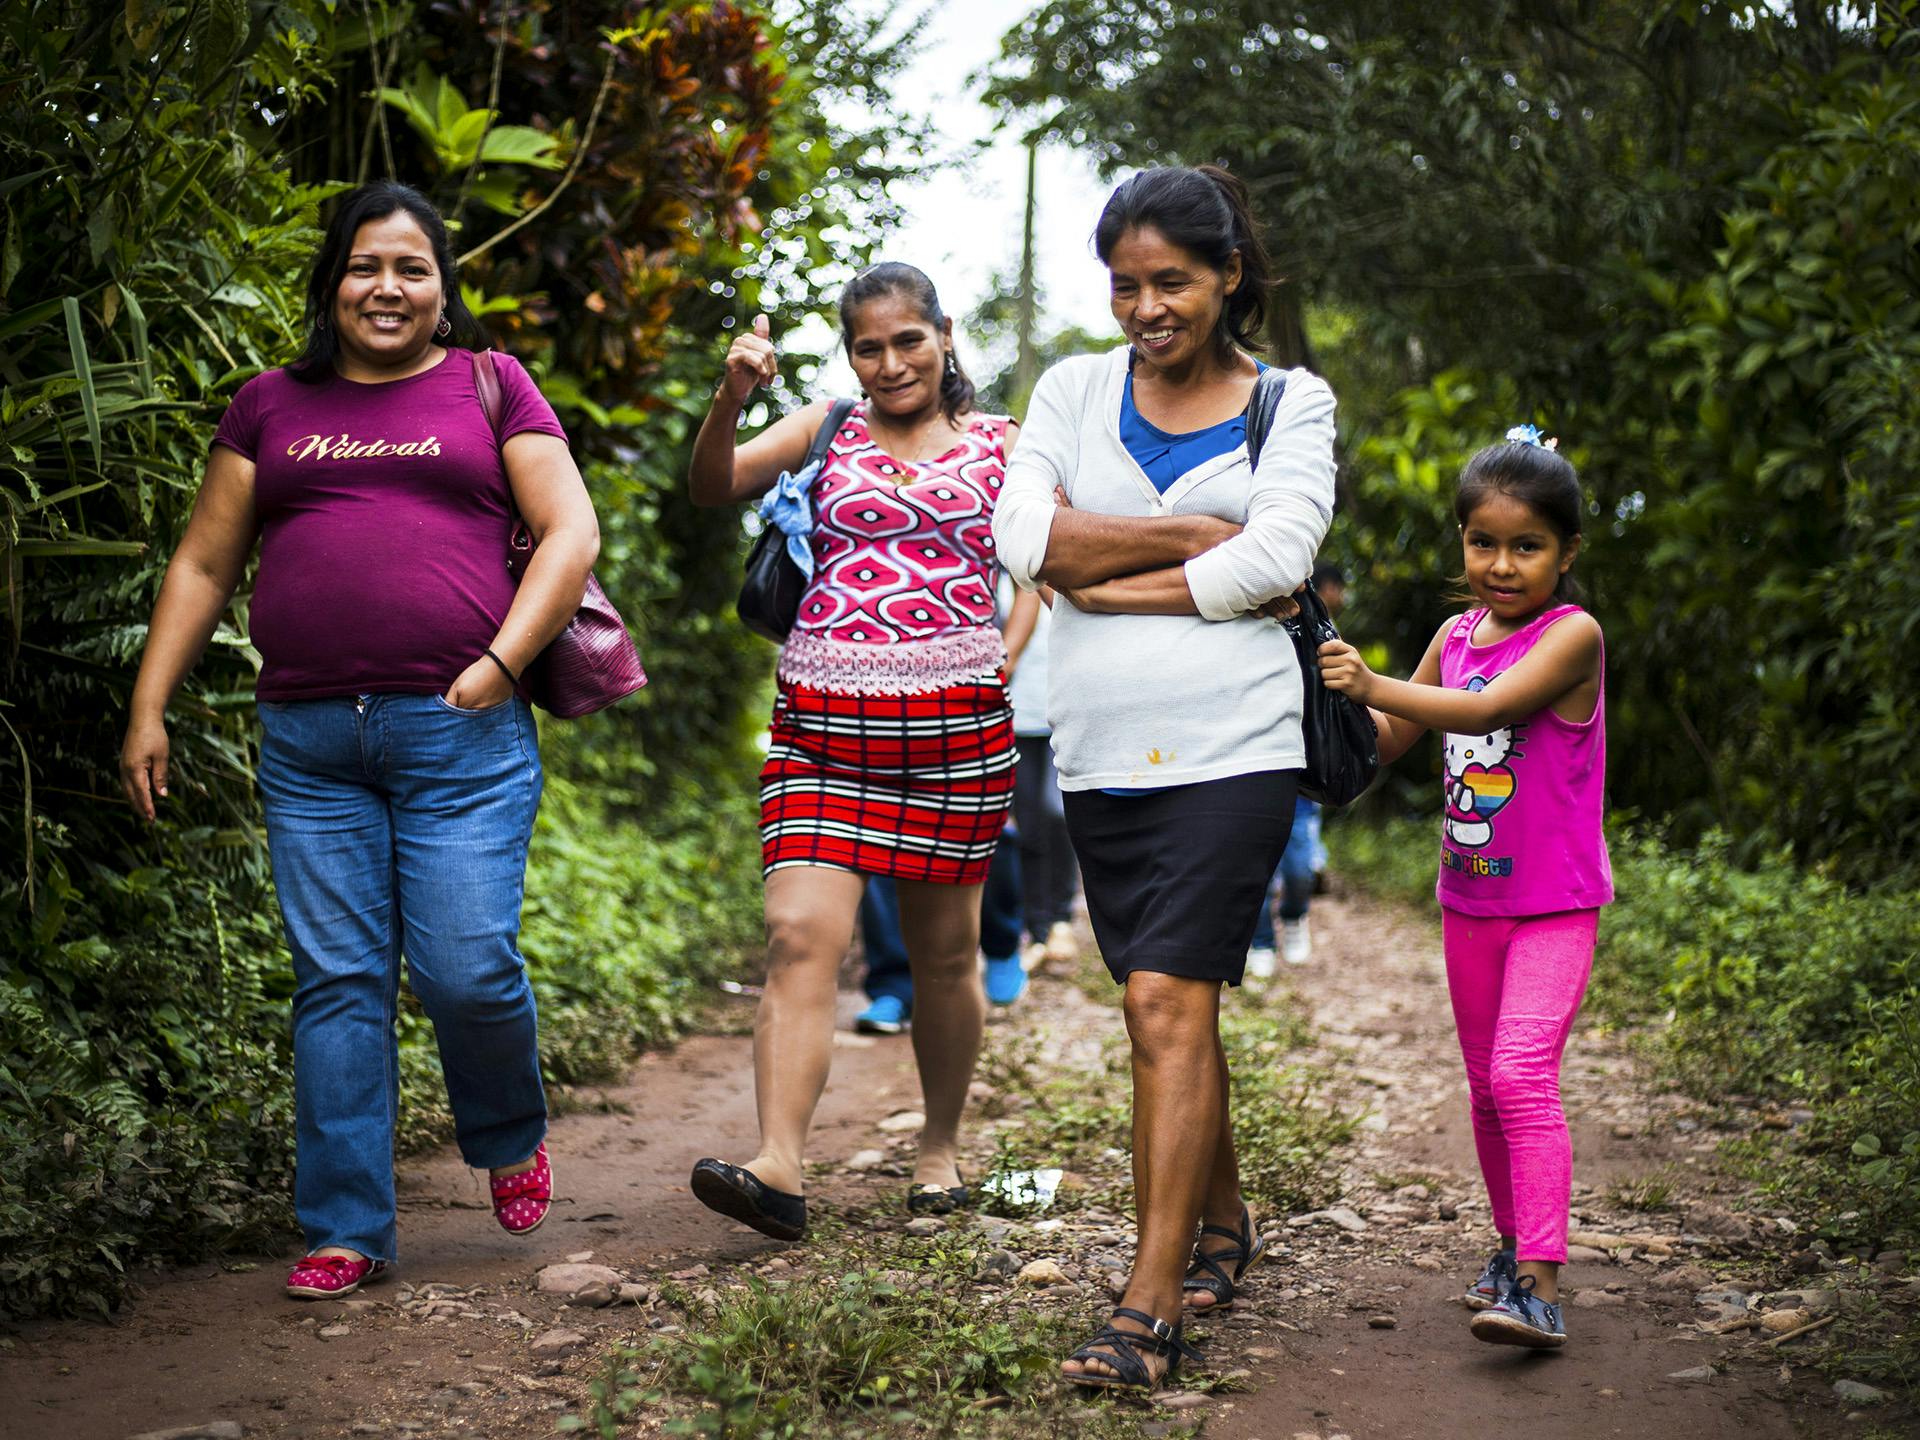 Tre kvinnor och ett barn vandrar på en bred stig i ett skogsområde. De ser glada ut.